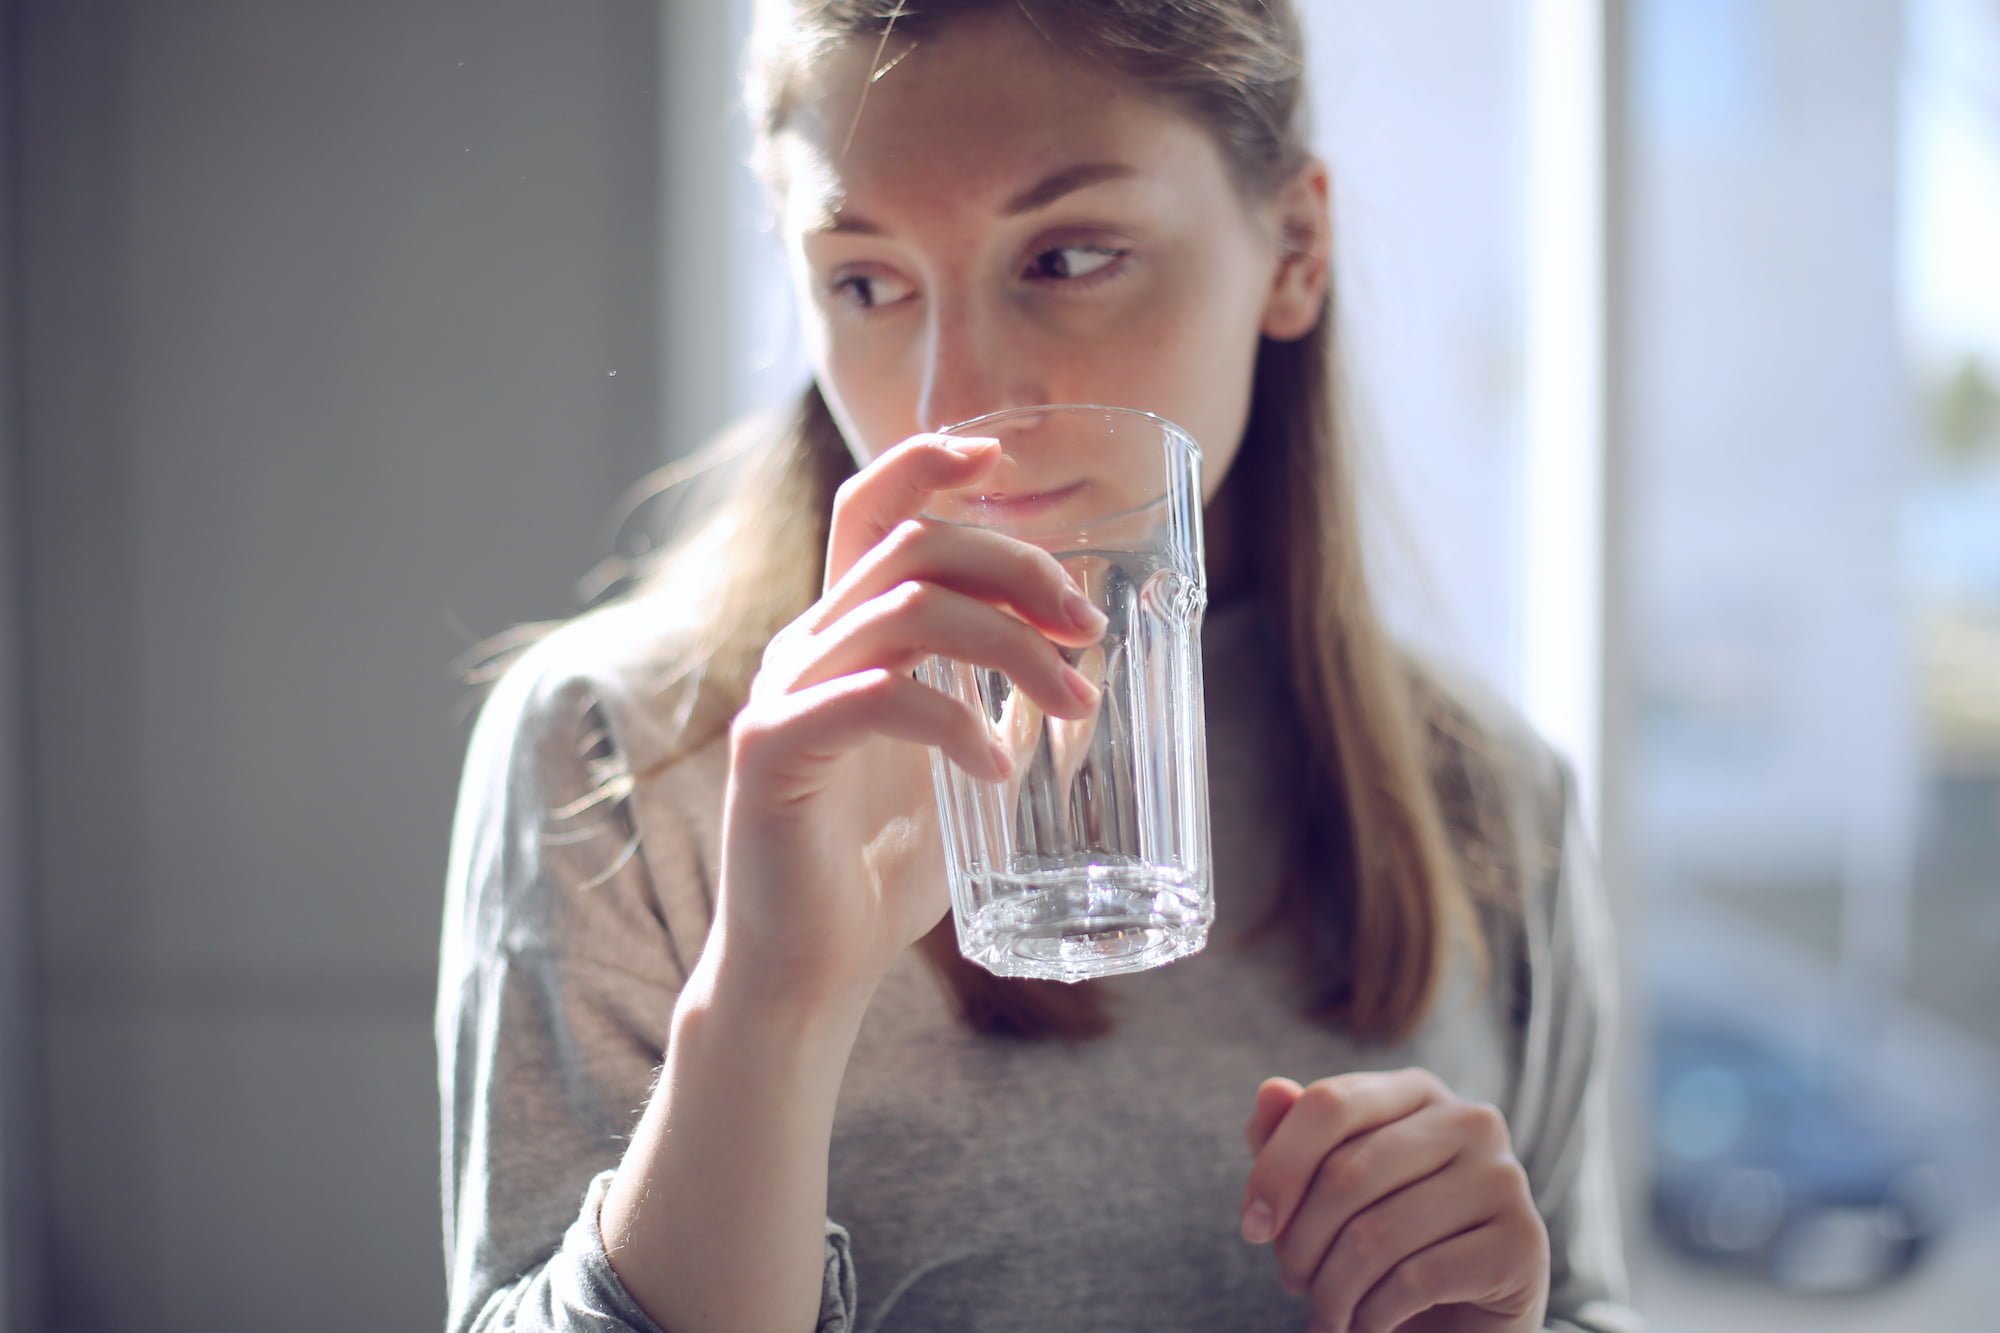 高血壓、腎臟病患者需小心使用生飲濾水淨水器、軟水器 Drink Water Beauty Per Day